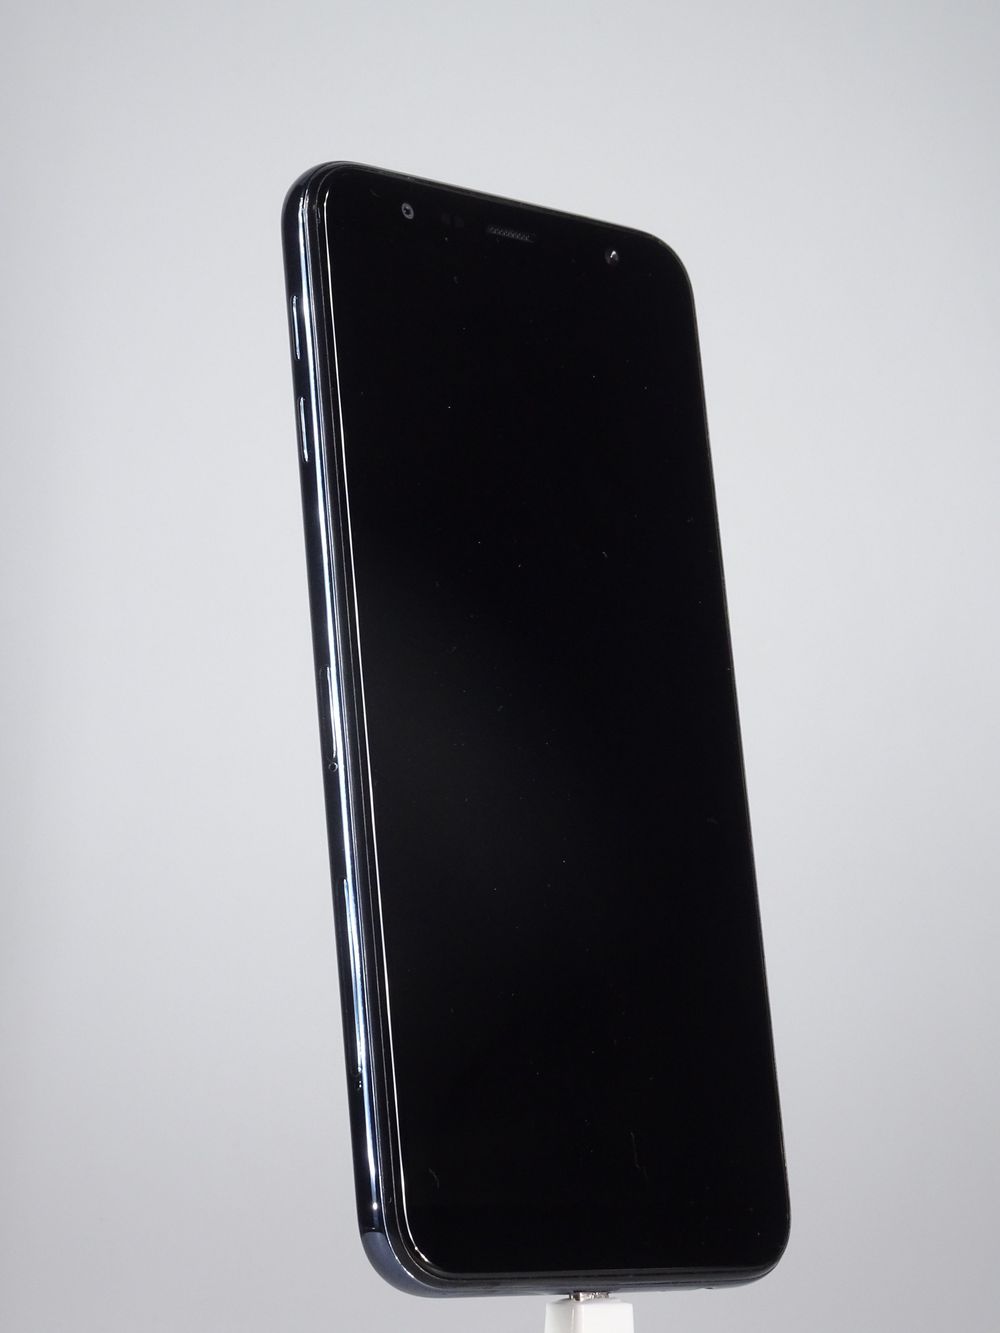 Мобилен телефон Samsung, Galaxy J4 Plus (2018), 32 GB, Black,  Като нов